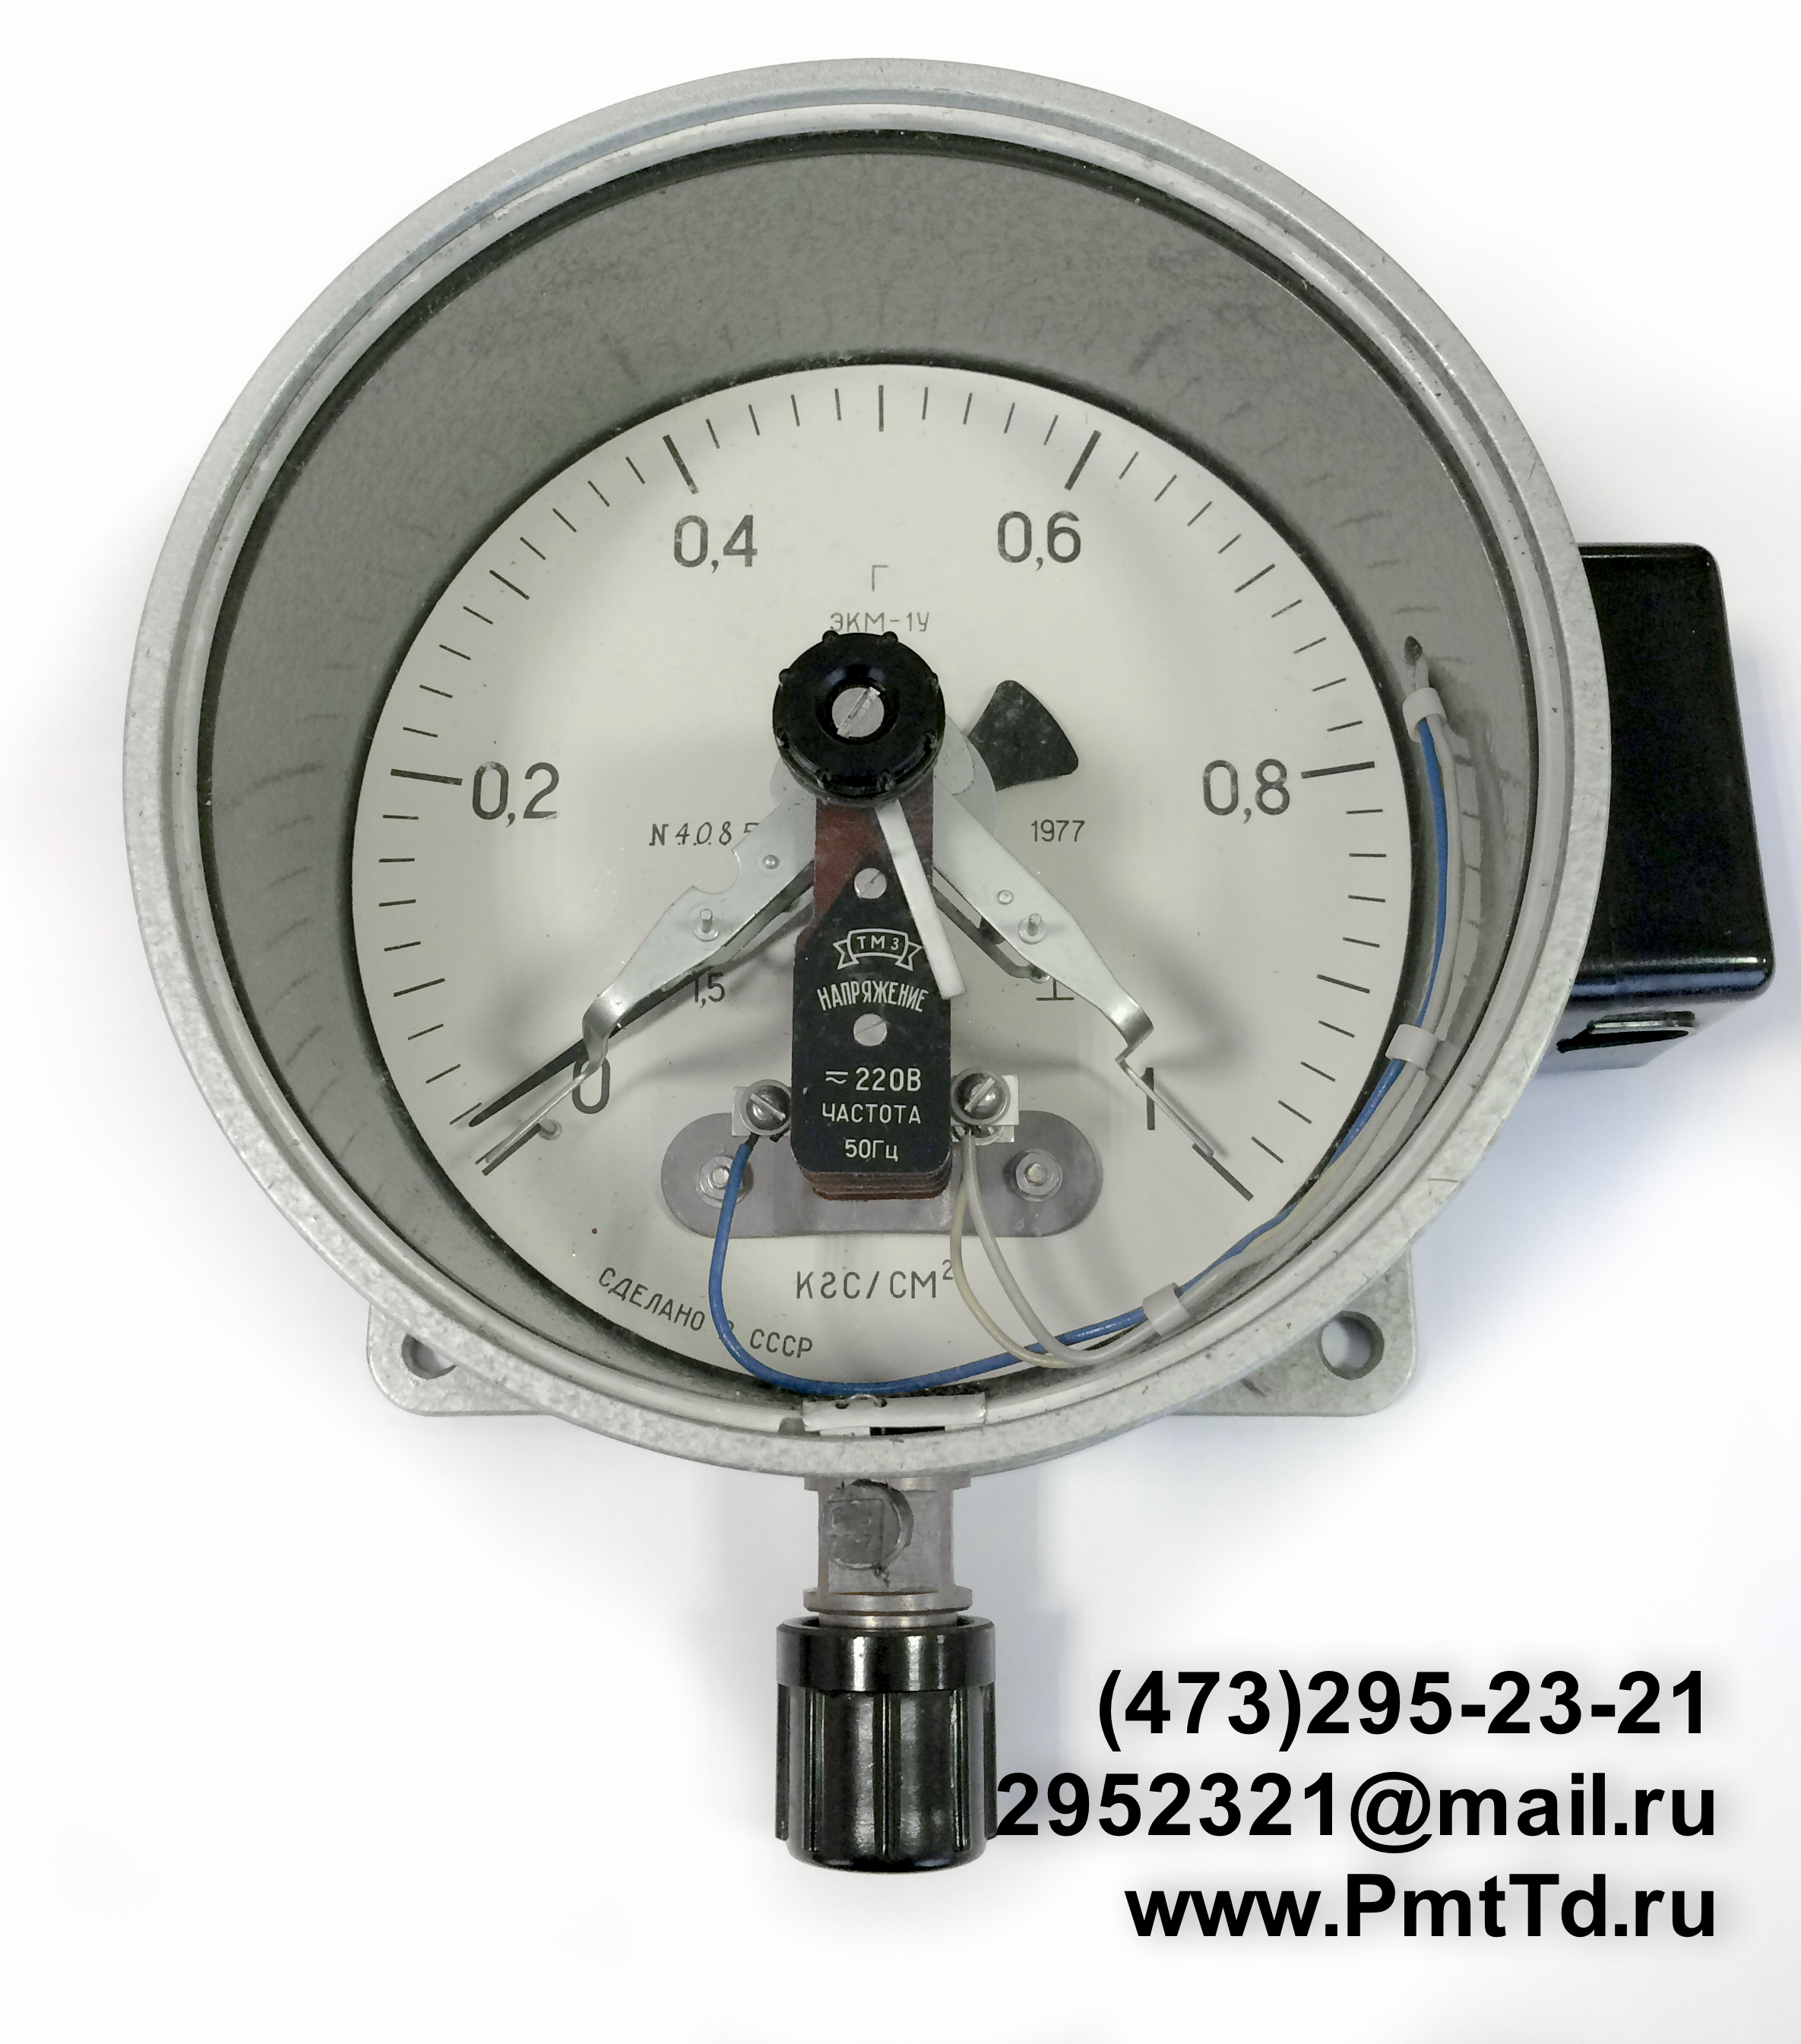 Электроконтактный манометр ЭКМ-1У 0-80 кгс/см2